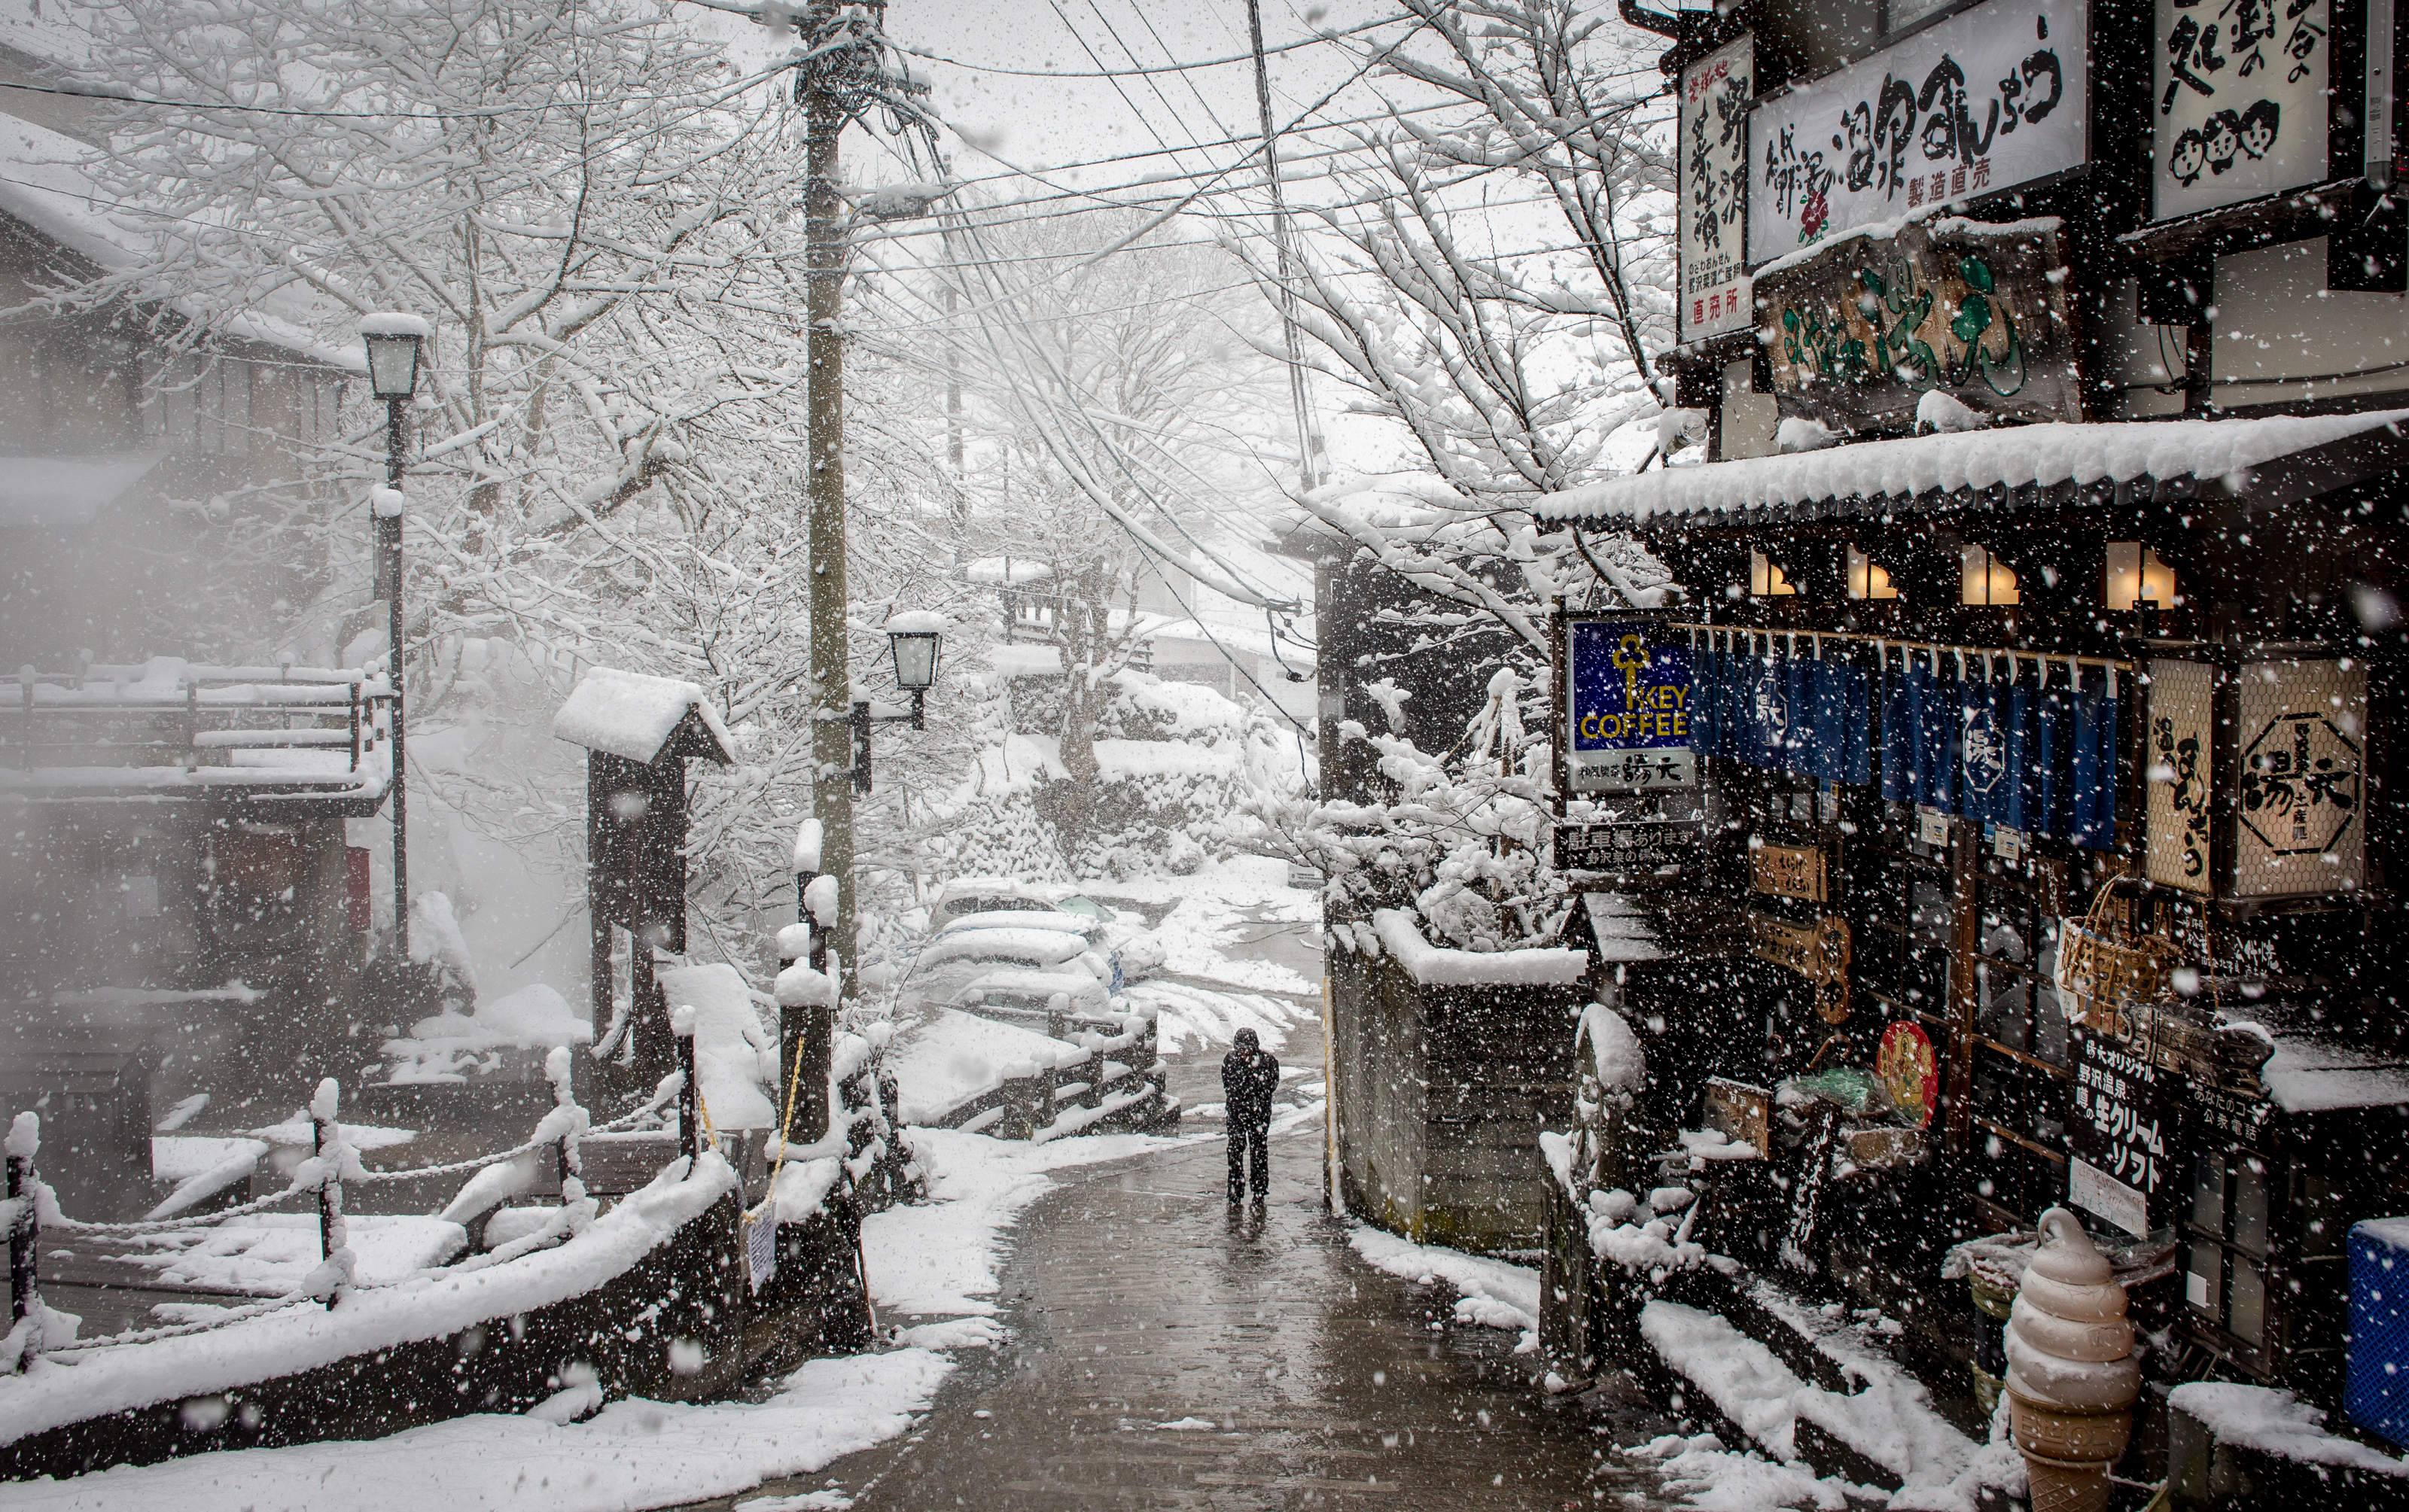 Snowing in Nozawa Onsen village